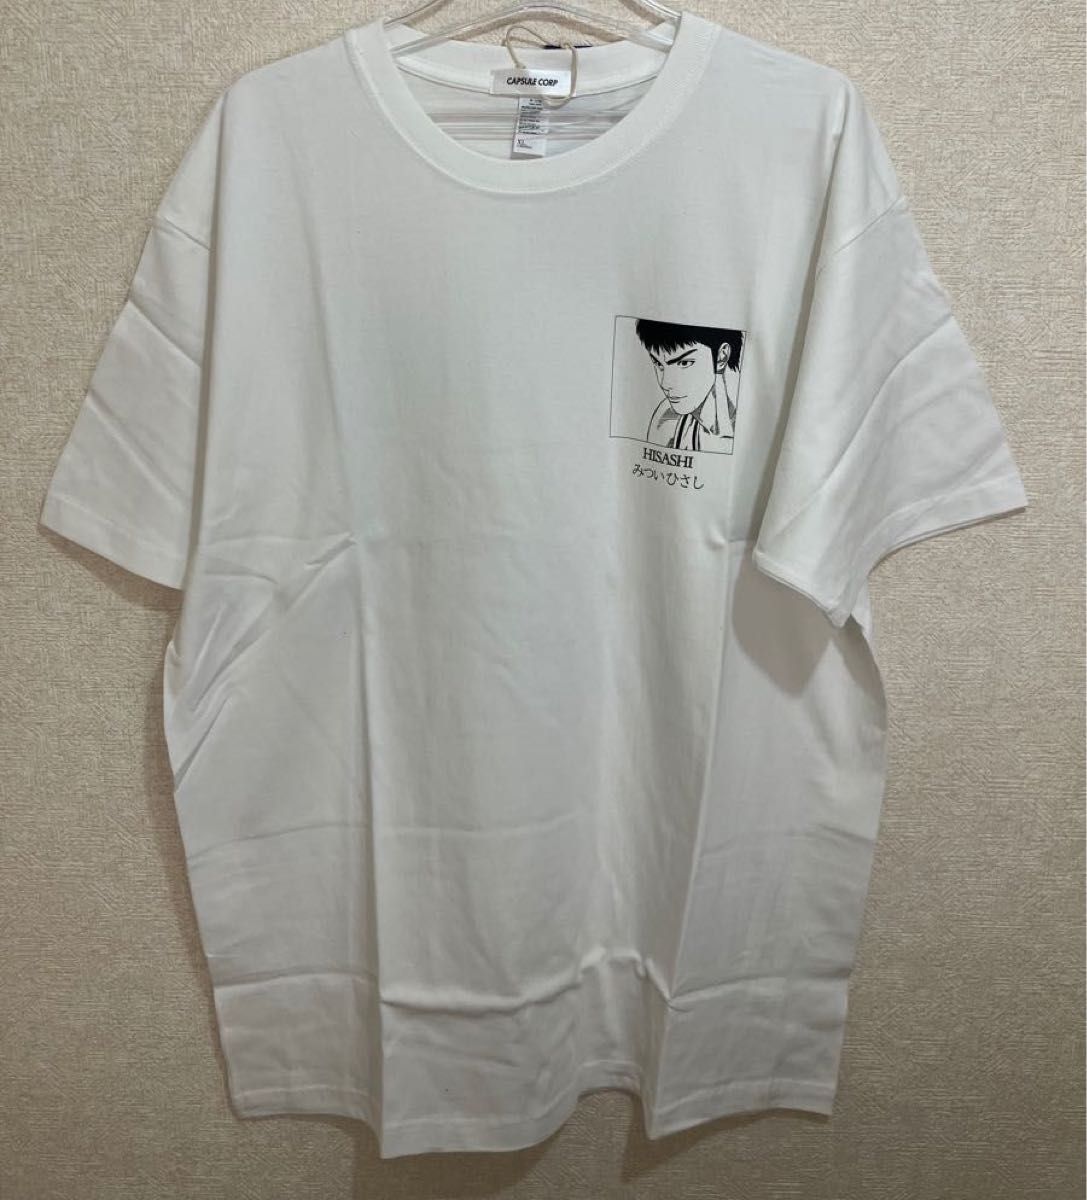 スラムダンク Slam dunk 三井寿Tシャツ XLサイズ新品未使用厚手 白